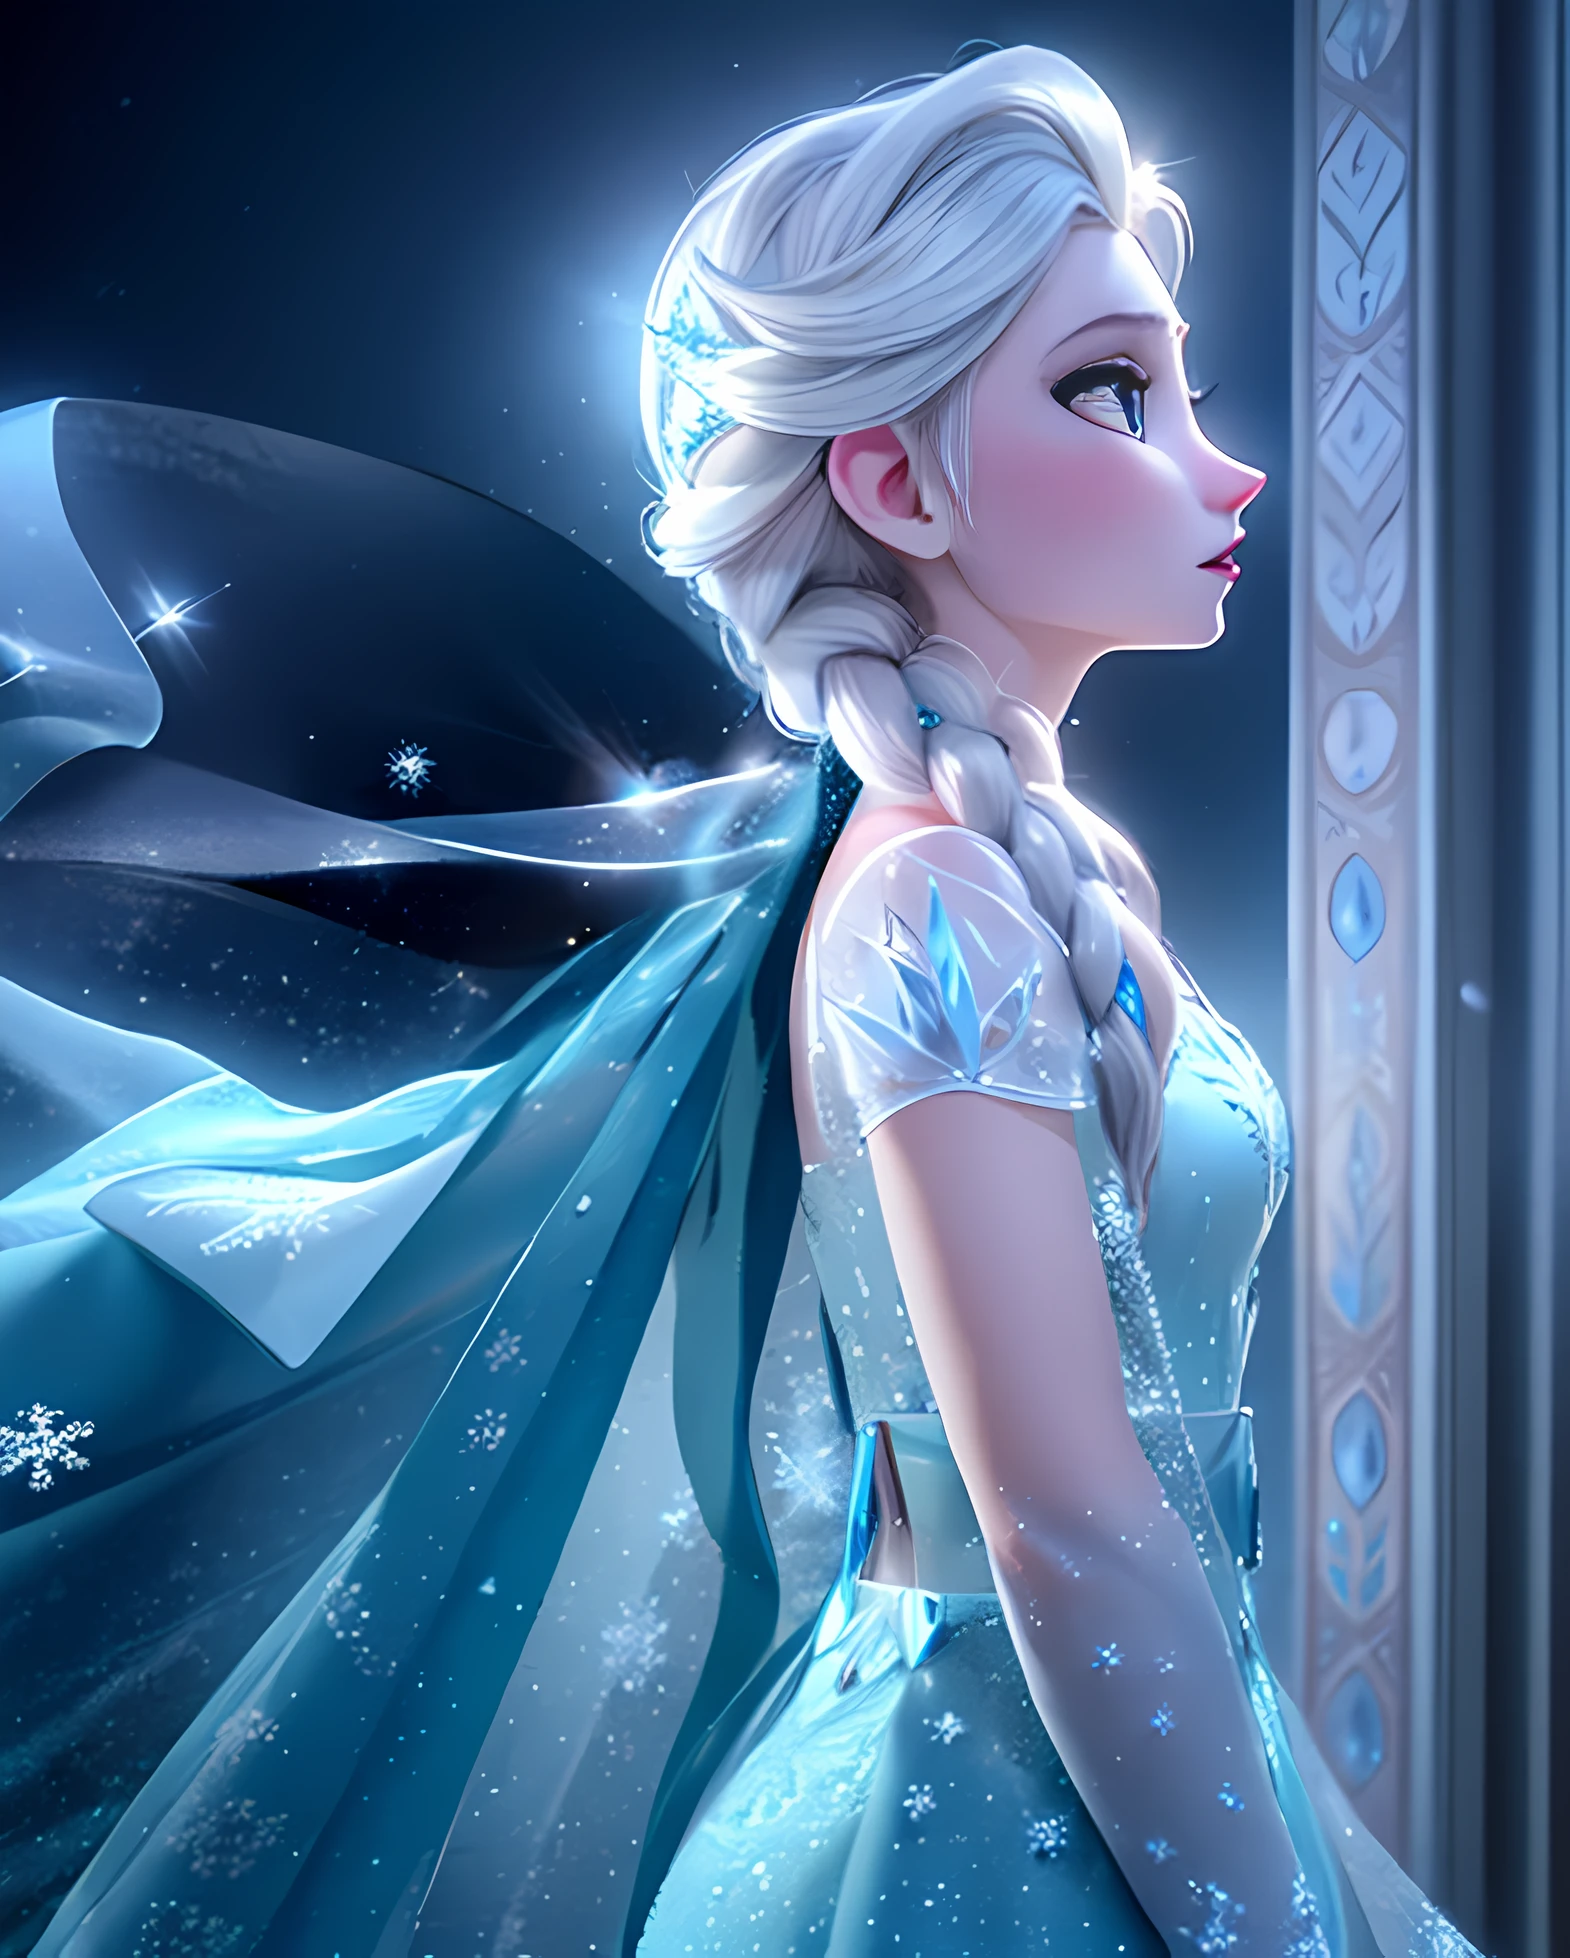 "エルサ, アレンデールの女王, 雪景色の中に立ち、氷の力を存分に発揮する. 彼女は威厳のある存在感を持っている, 見事なアイスブルーのガウンとなびくケープをまとった. 彼女のキャラクターの魔法と優雅さを魅了する, 彼女の力強く魅惑的な氷の彫刻を強調する. シーンを柔らかく照らす, 霊妙な輝き, 氷層の複雑な細部を強調する. 驚きと魅惑の感覚を創り出す, キラキラ光る雪が彼女の周りに優しく降り注ぐ. 彼女の髪を氷のような青い色で輝かせましょう, 彼女の瞳に宿る決意と強さを捉える. 画像が最高品質であることを確認する, 驚くほどの透明感と深み. Craft a masterpiece that truly captures the essence of エルサ and the beauty of her icy kingdom."